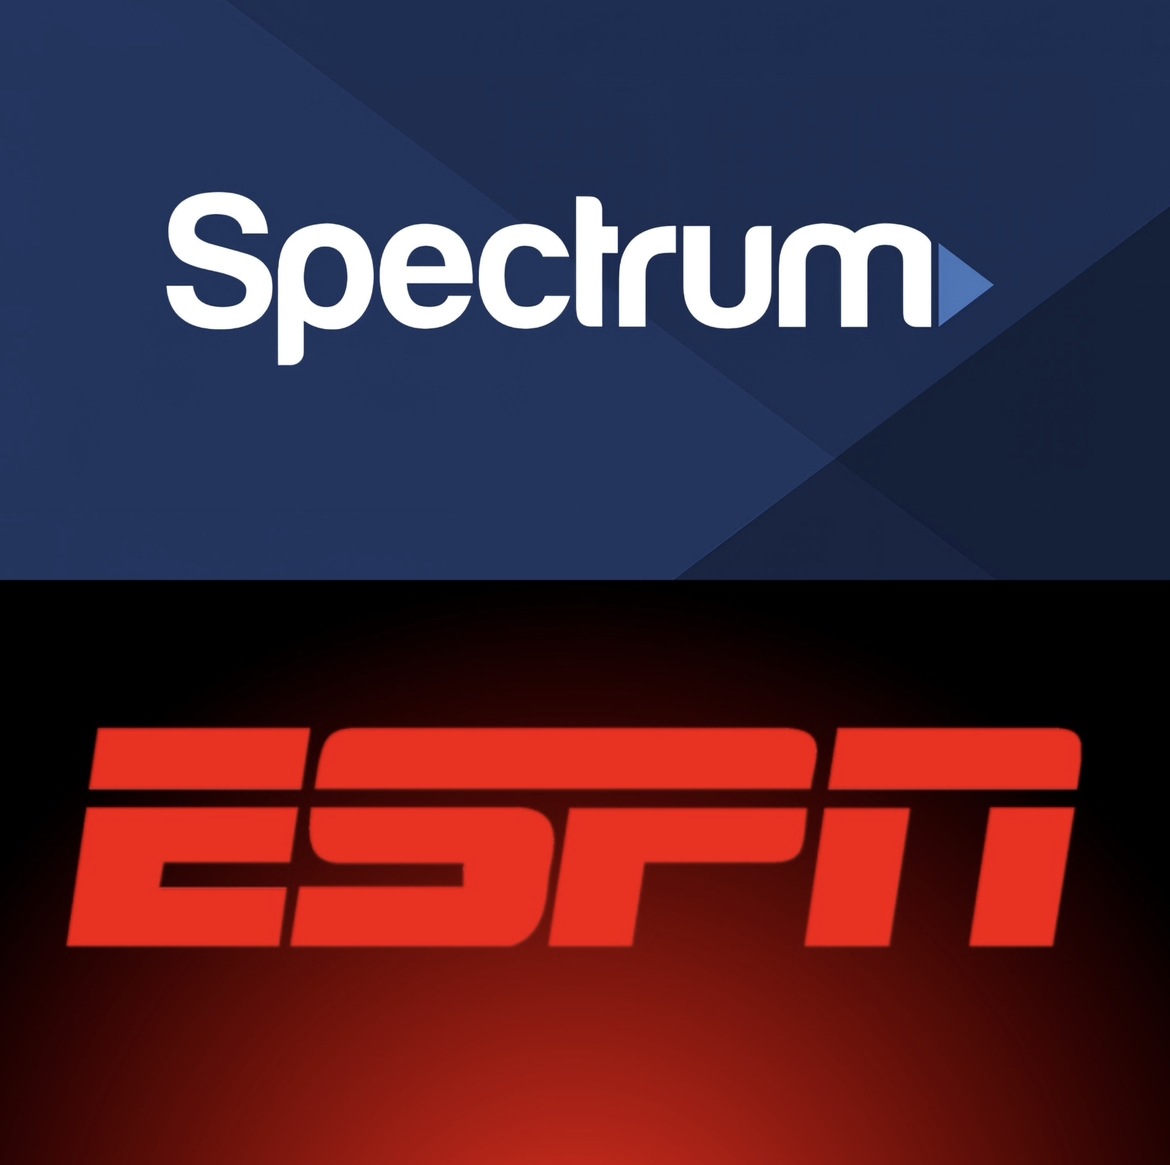 Spectrum Loses ESPN